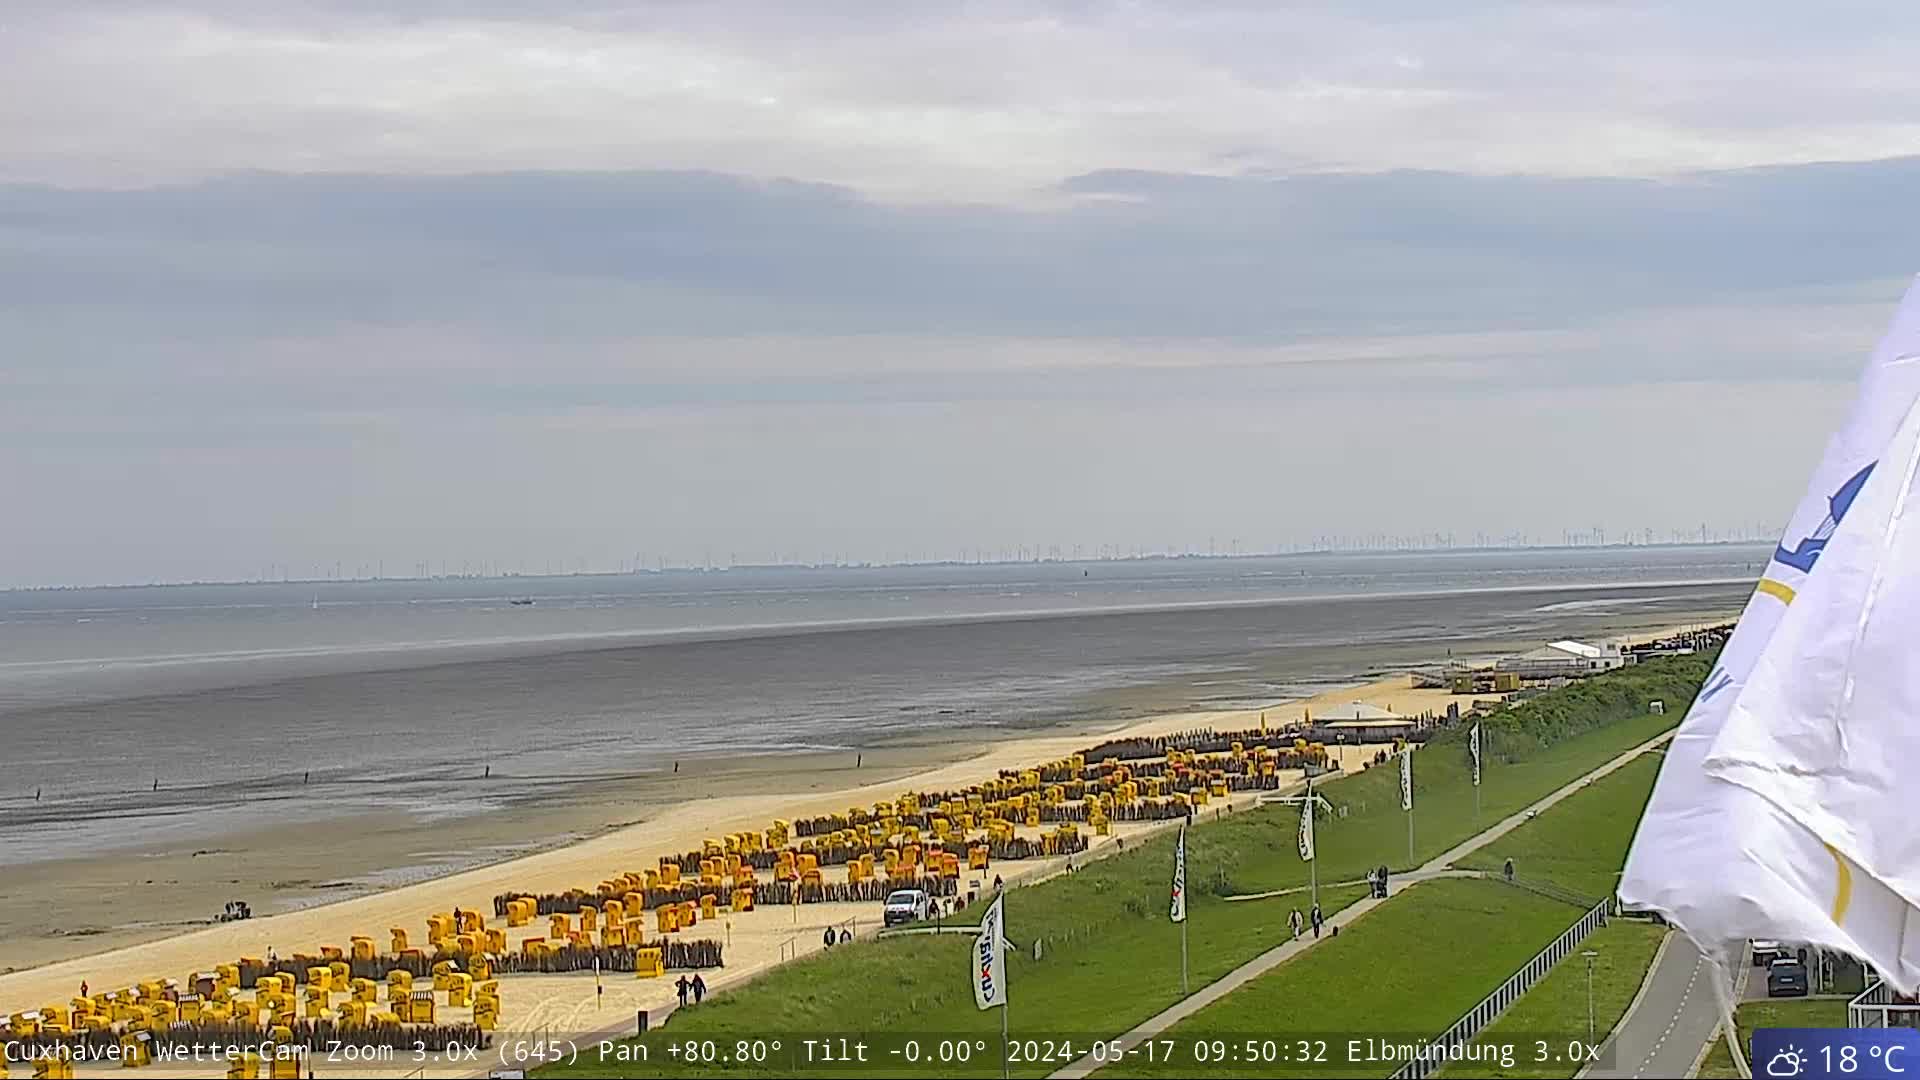 Cuxhaven Fre. 09:51